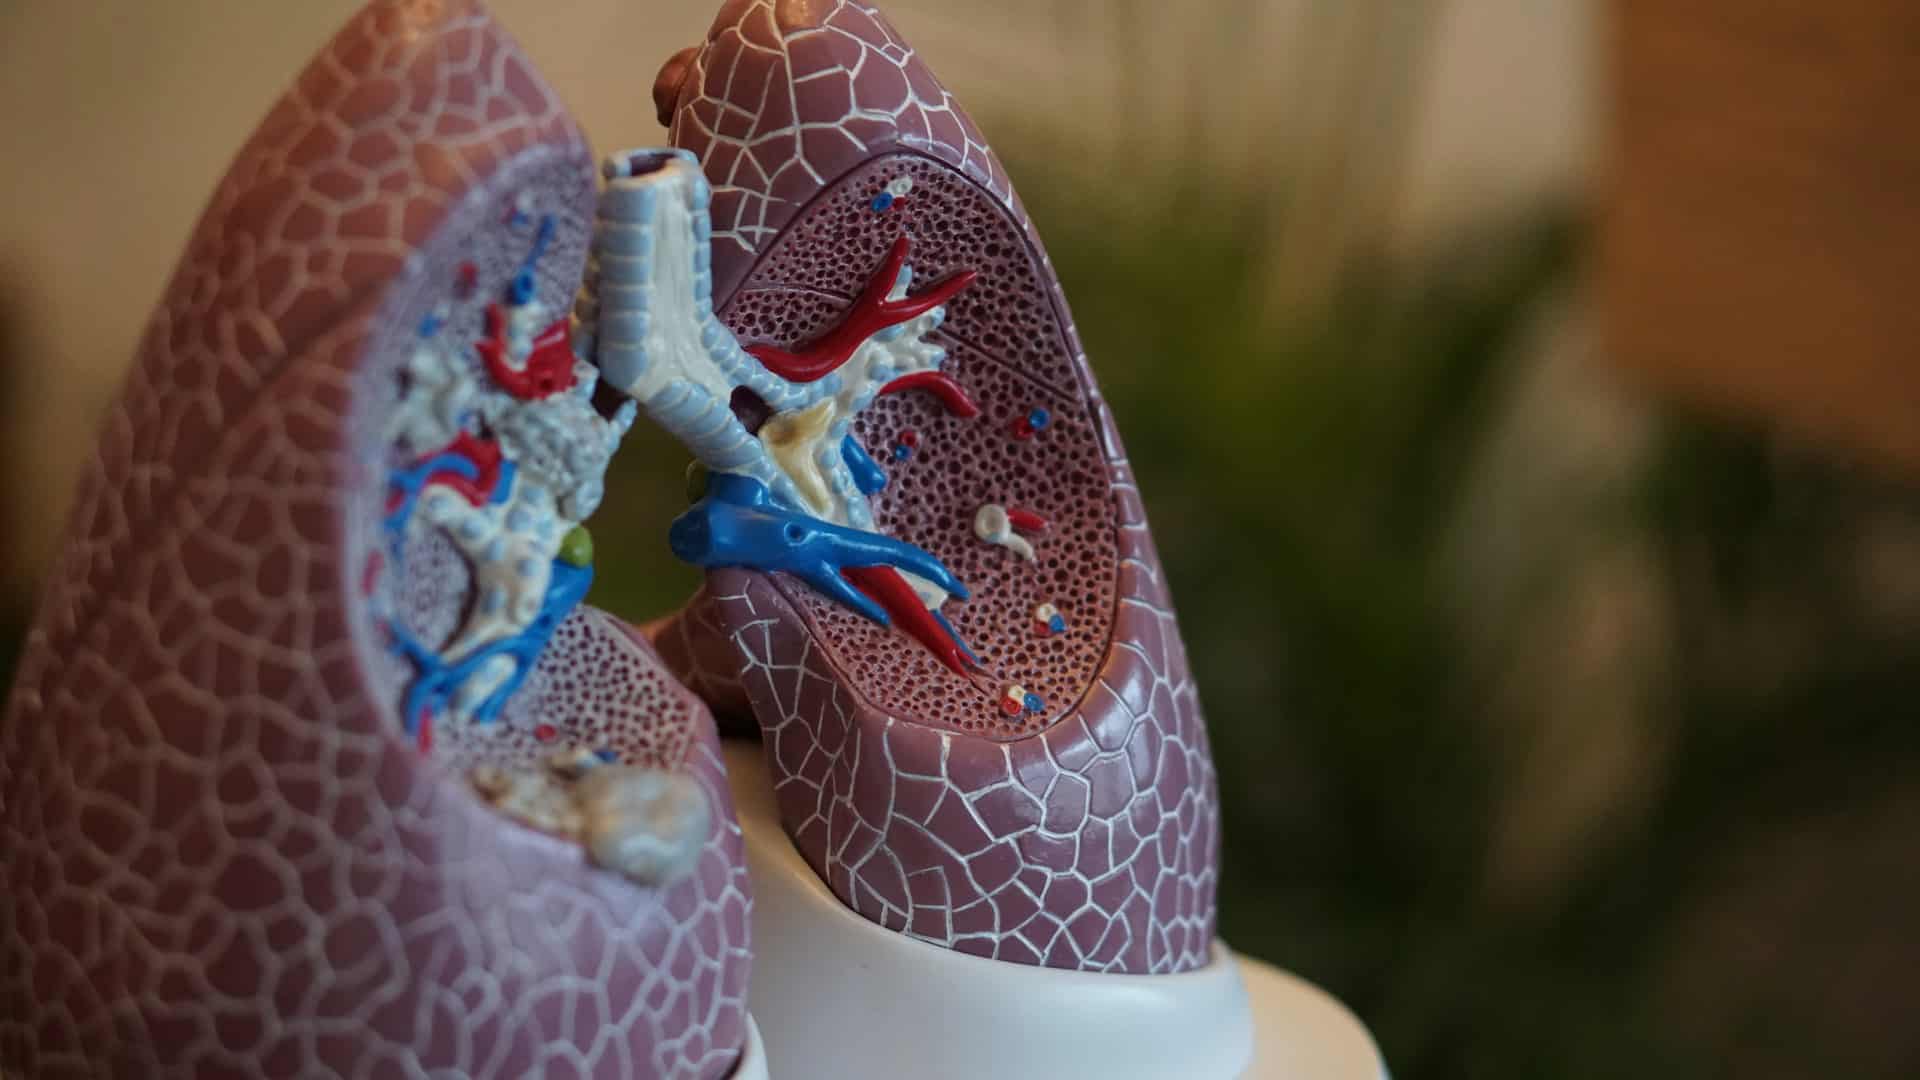 Verbesserte Atmung durch Entfernen von Lungenteilen